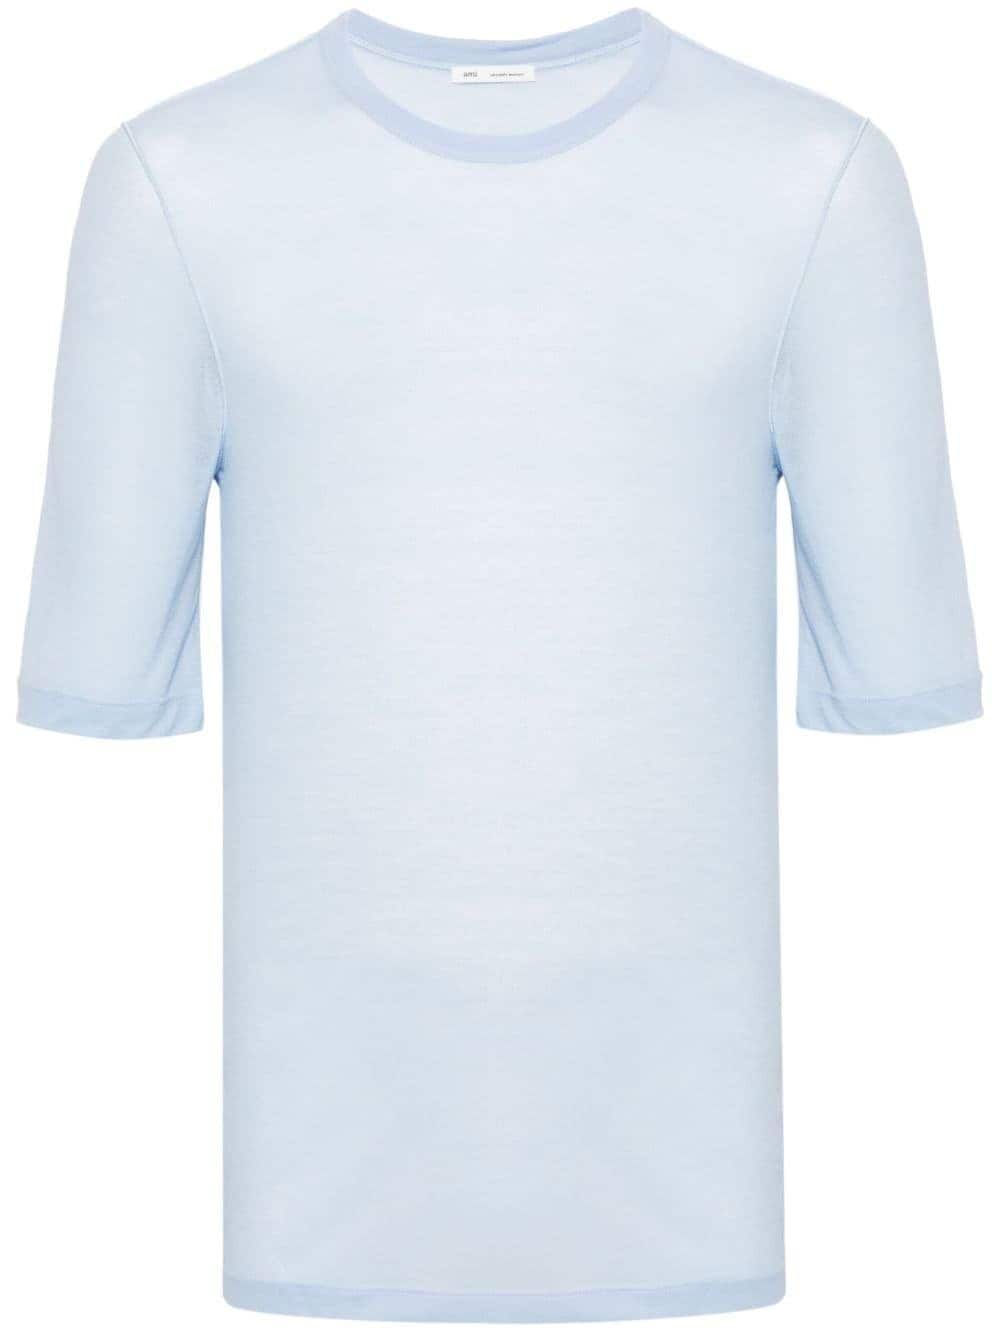 AMI Paris semi-sheer lyocell T-shirt - 484 CASHMERE BLUE von AMI Paris